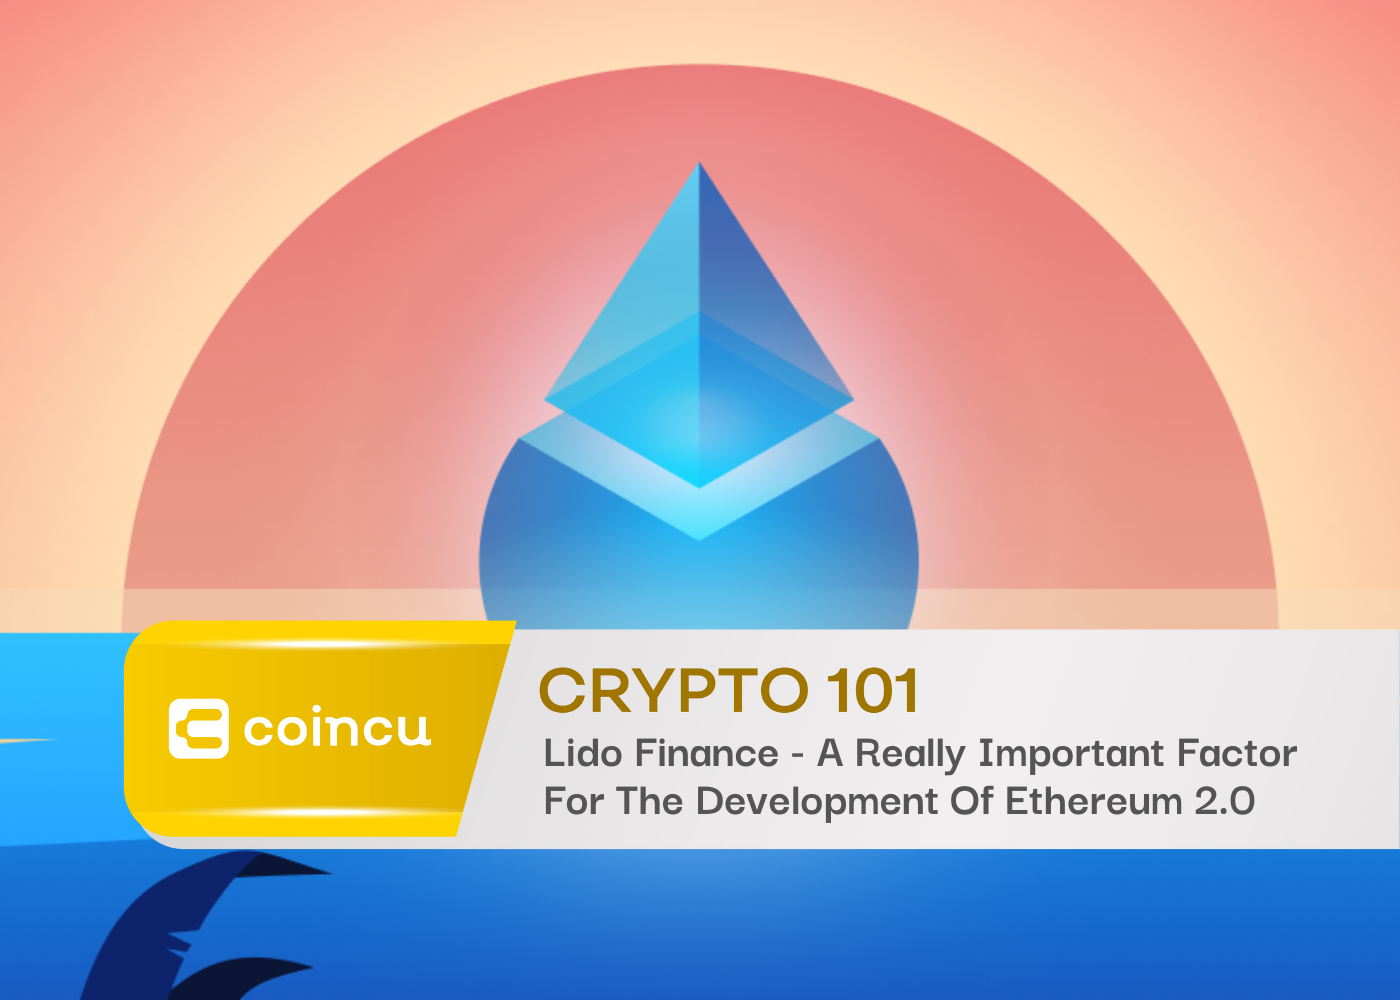 Lido Finance - Un facteur vraiment important pour le développement d'Ethereum 2.0